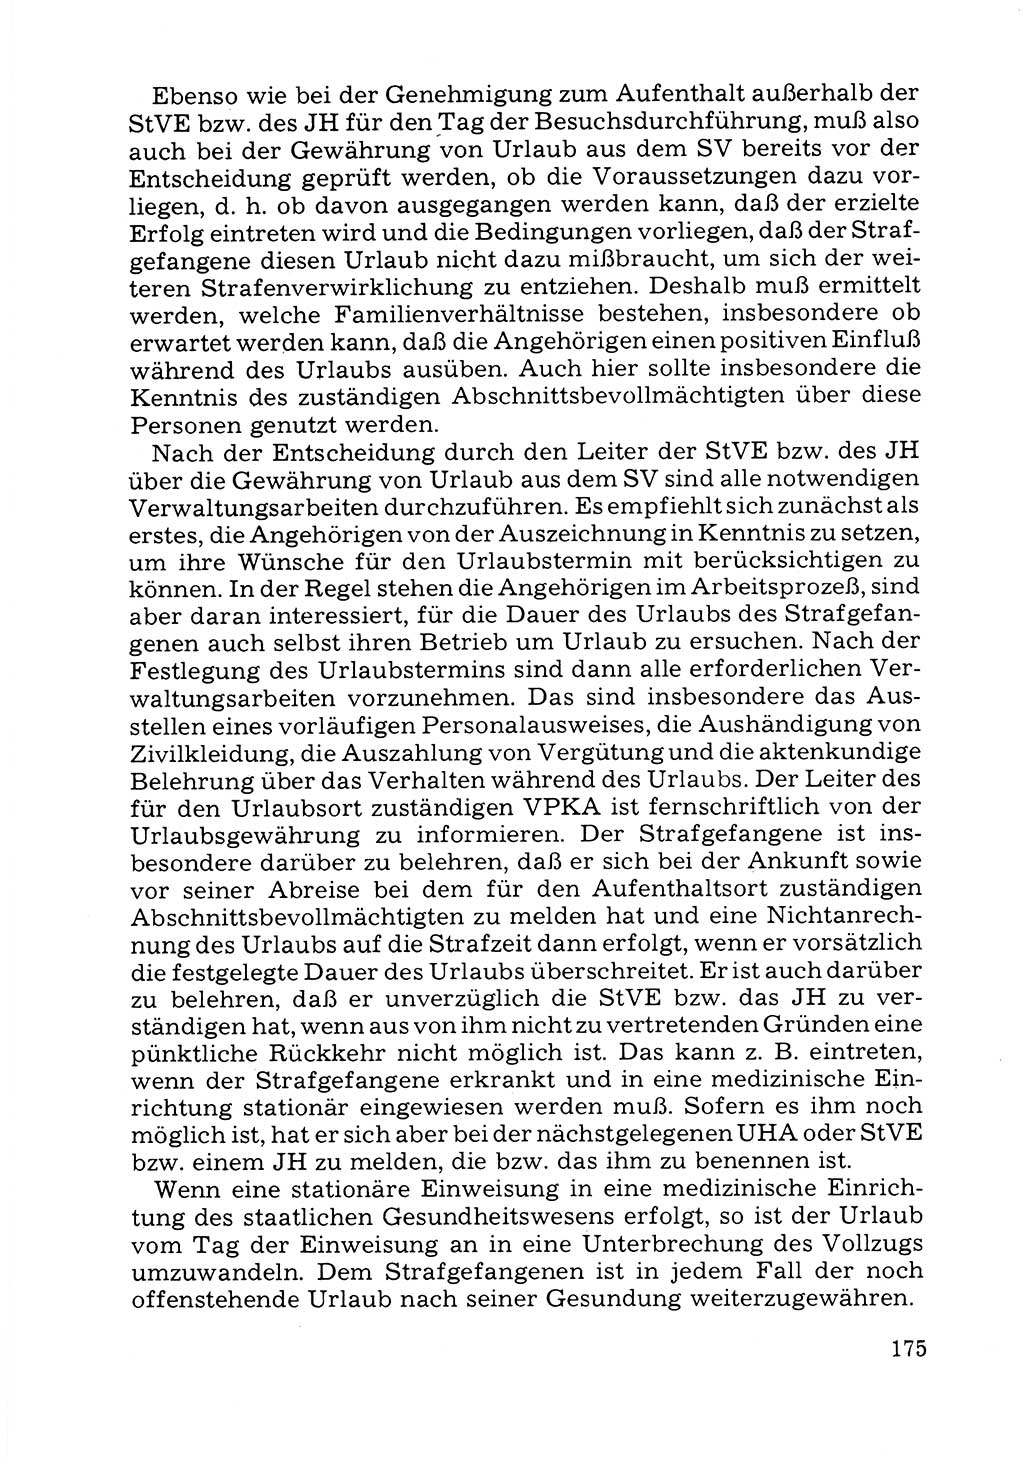 Verwaltungsmäßige Aufgaben beim Vollzug der Untersuchungshaft (U-Haft) sowie der Strafen mit Freiheitsentzug (SV) [Deutsche Demokratische Republik (DDR)] 1980, Seite 175 (Aufg. Vollz. U-Haft SV DDR 1980, S. 175)